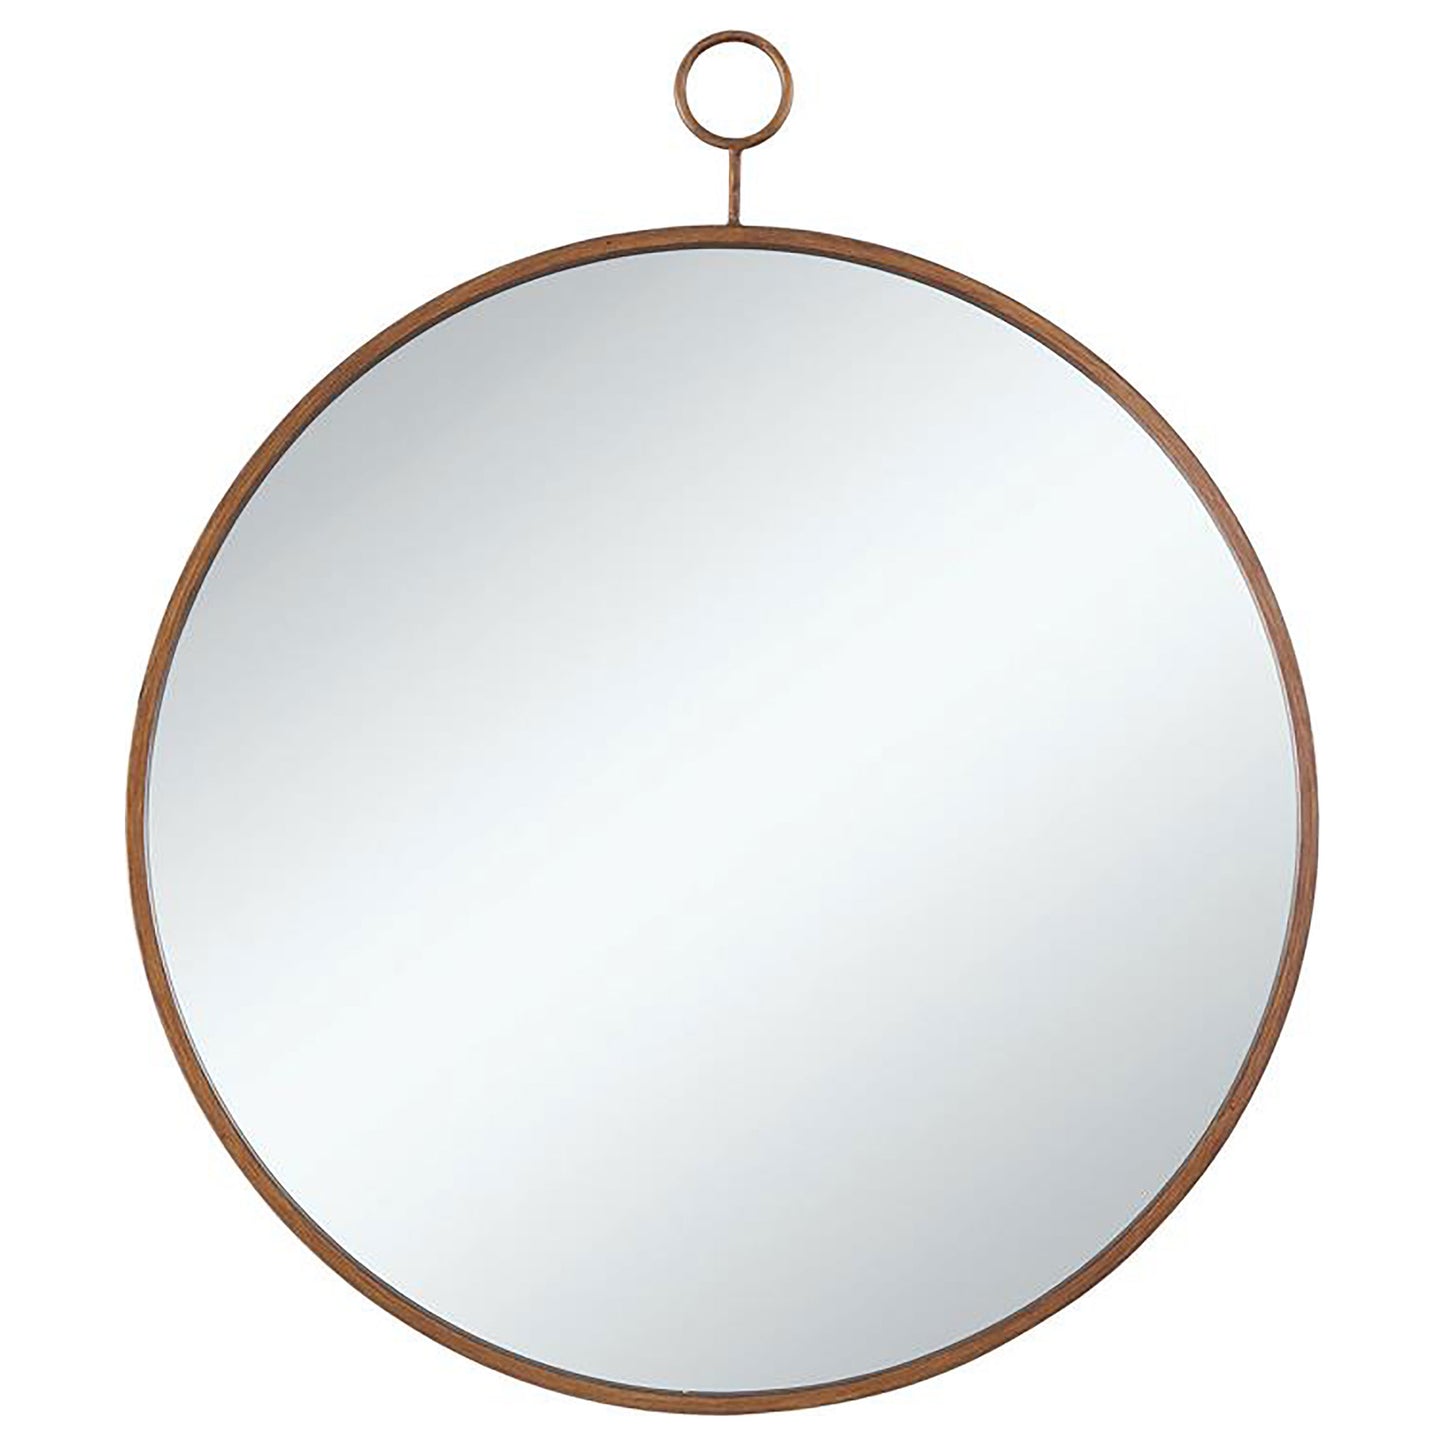 Eulaina Round Mirror Gold